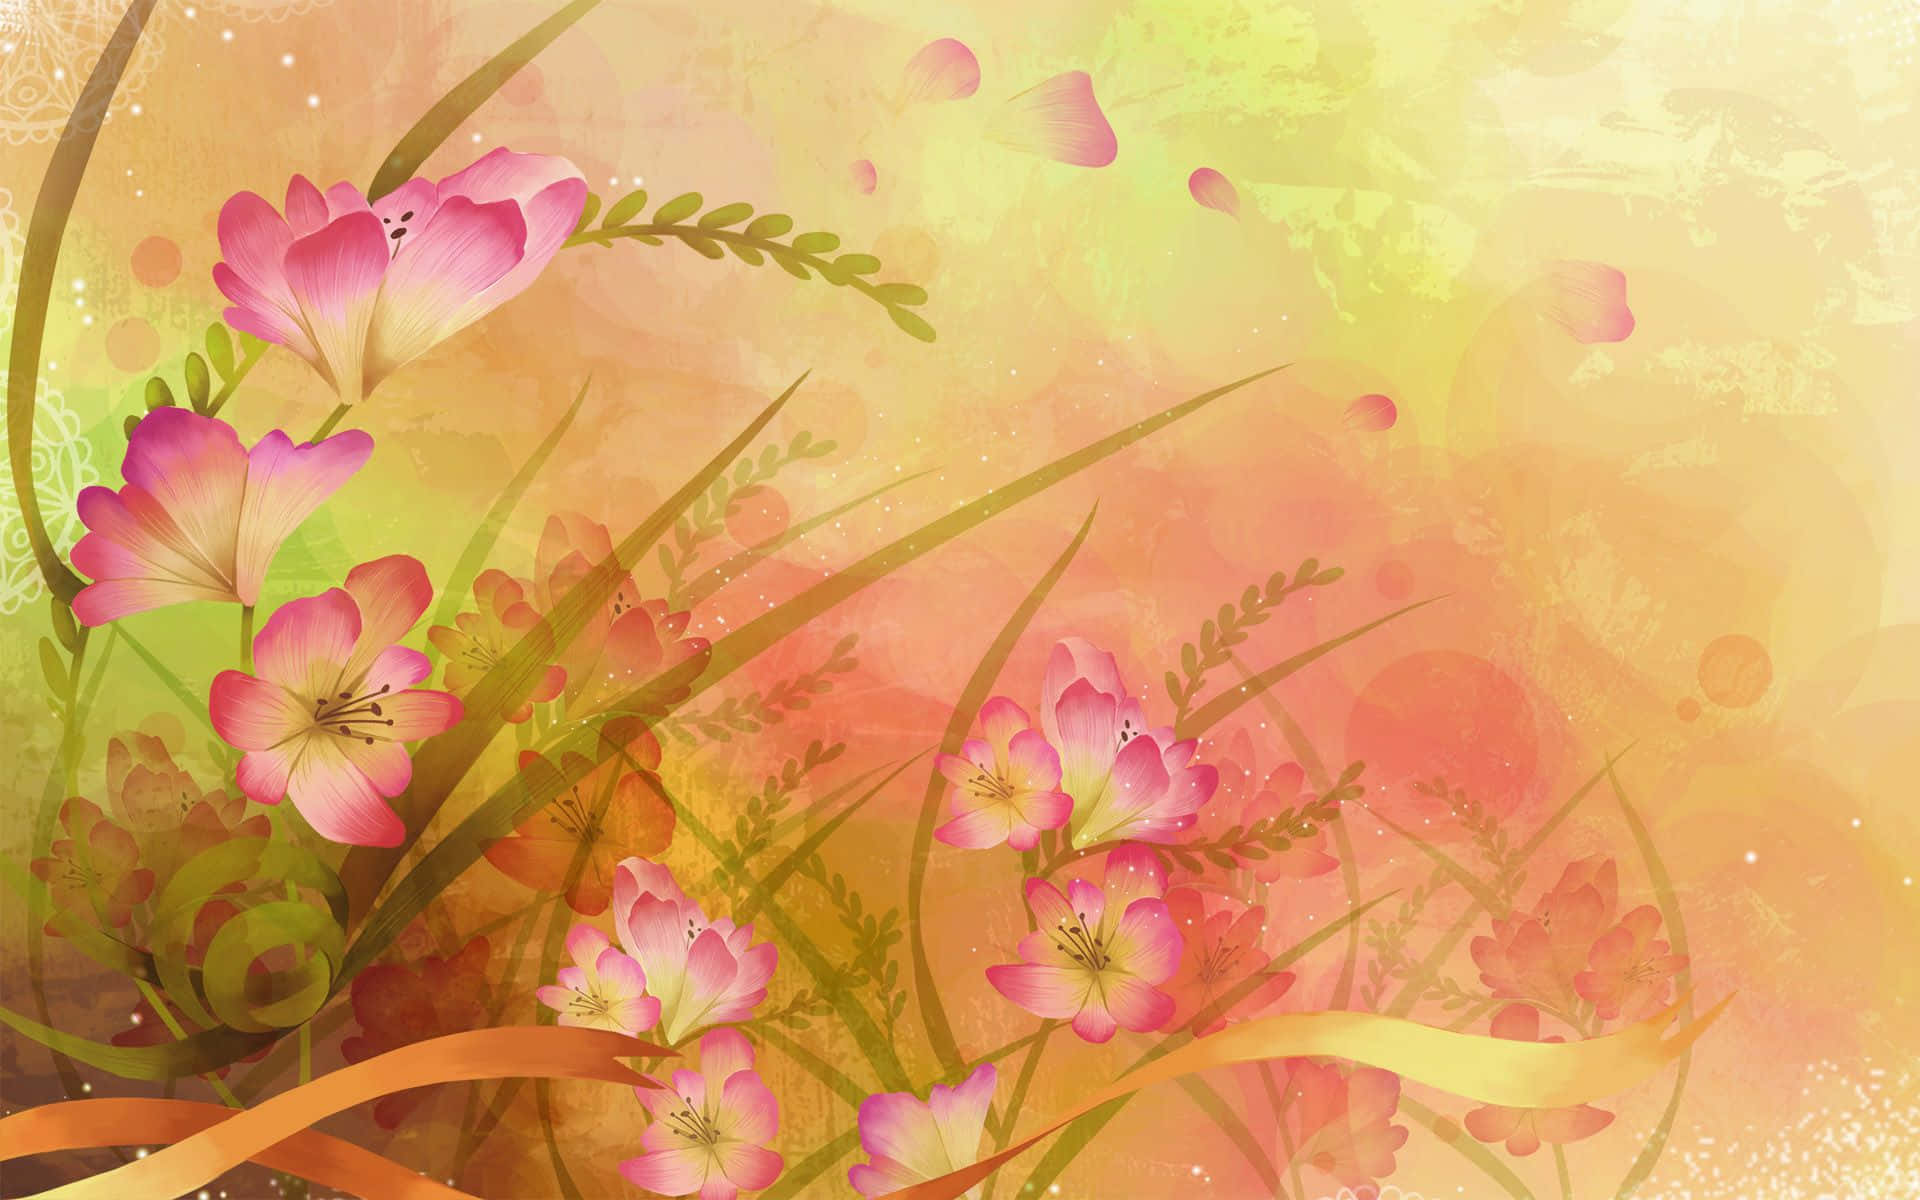 Stunning Flower Art in Vibrant Hues Wallpaper